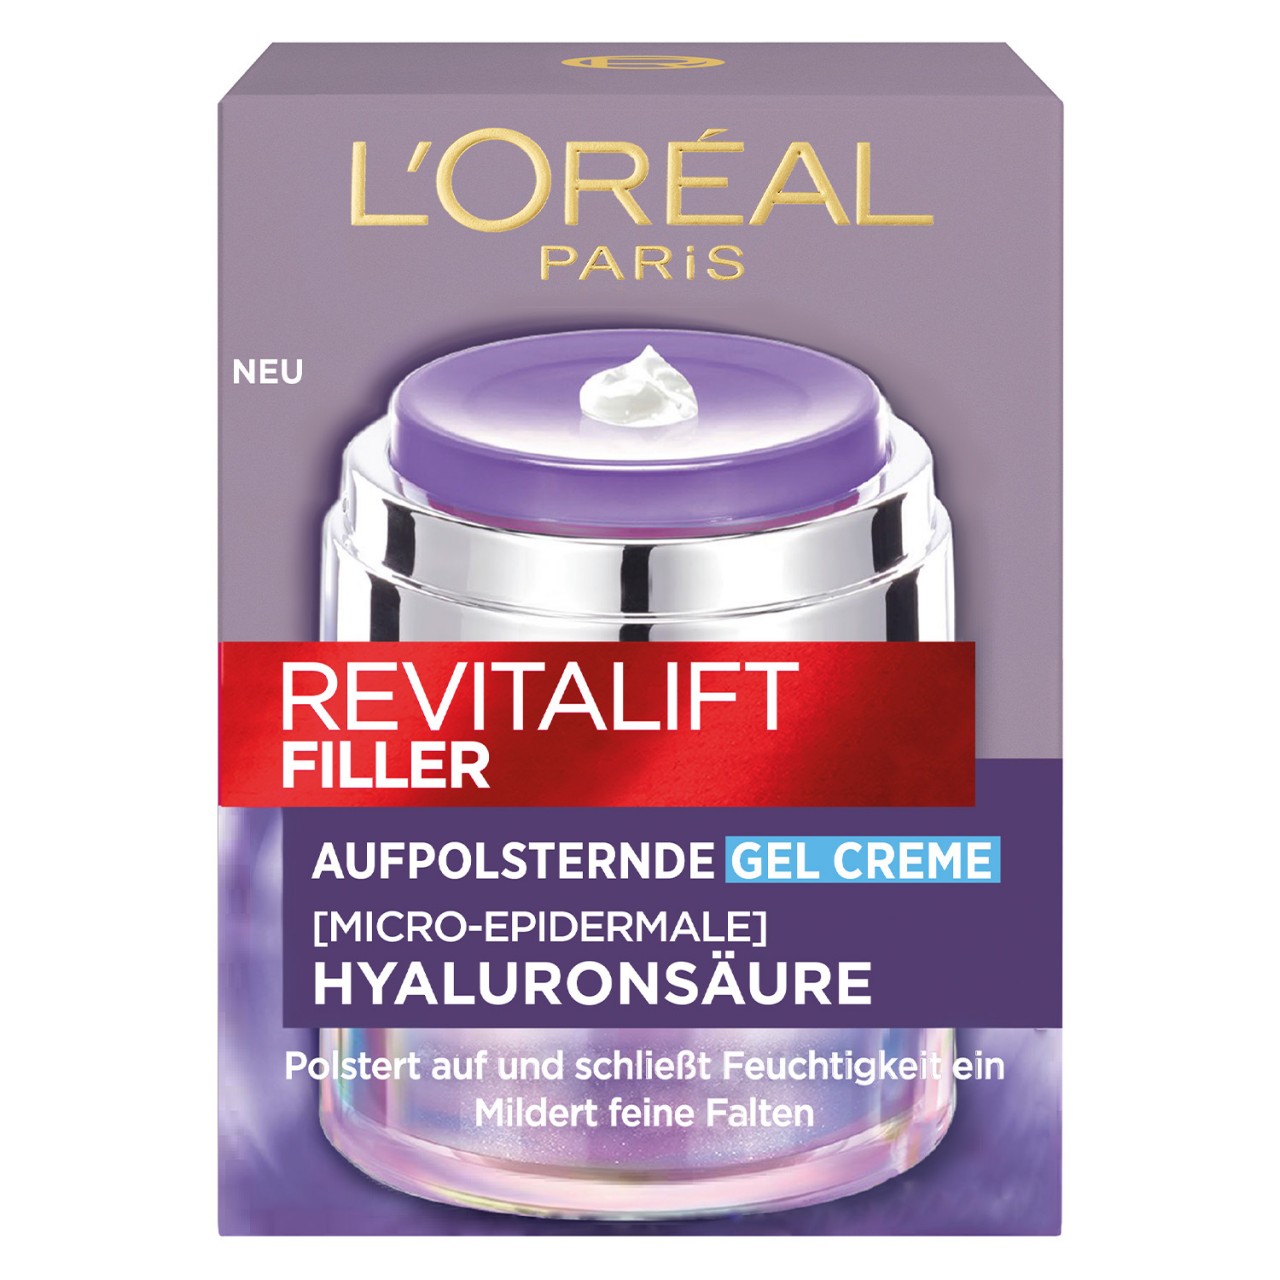 LOréal Skin Expert - Revitalift Filler Gel Creme von L'Oréal Paris